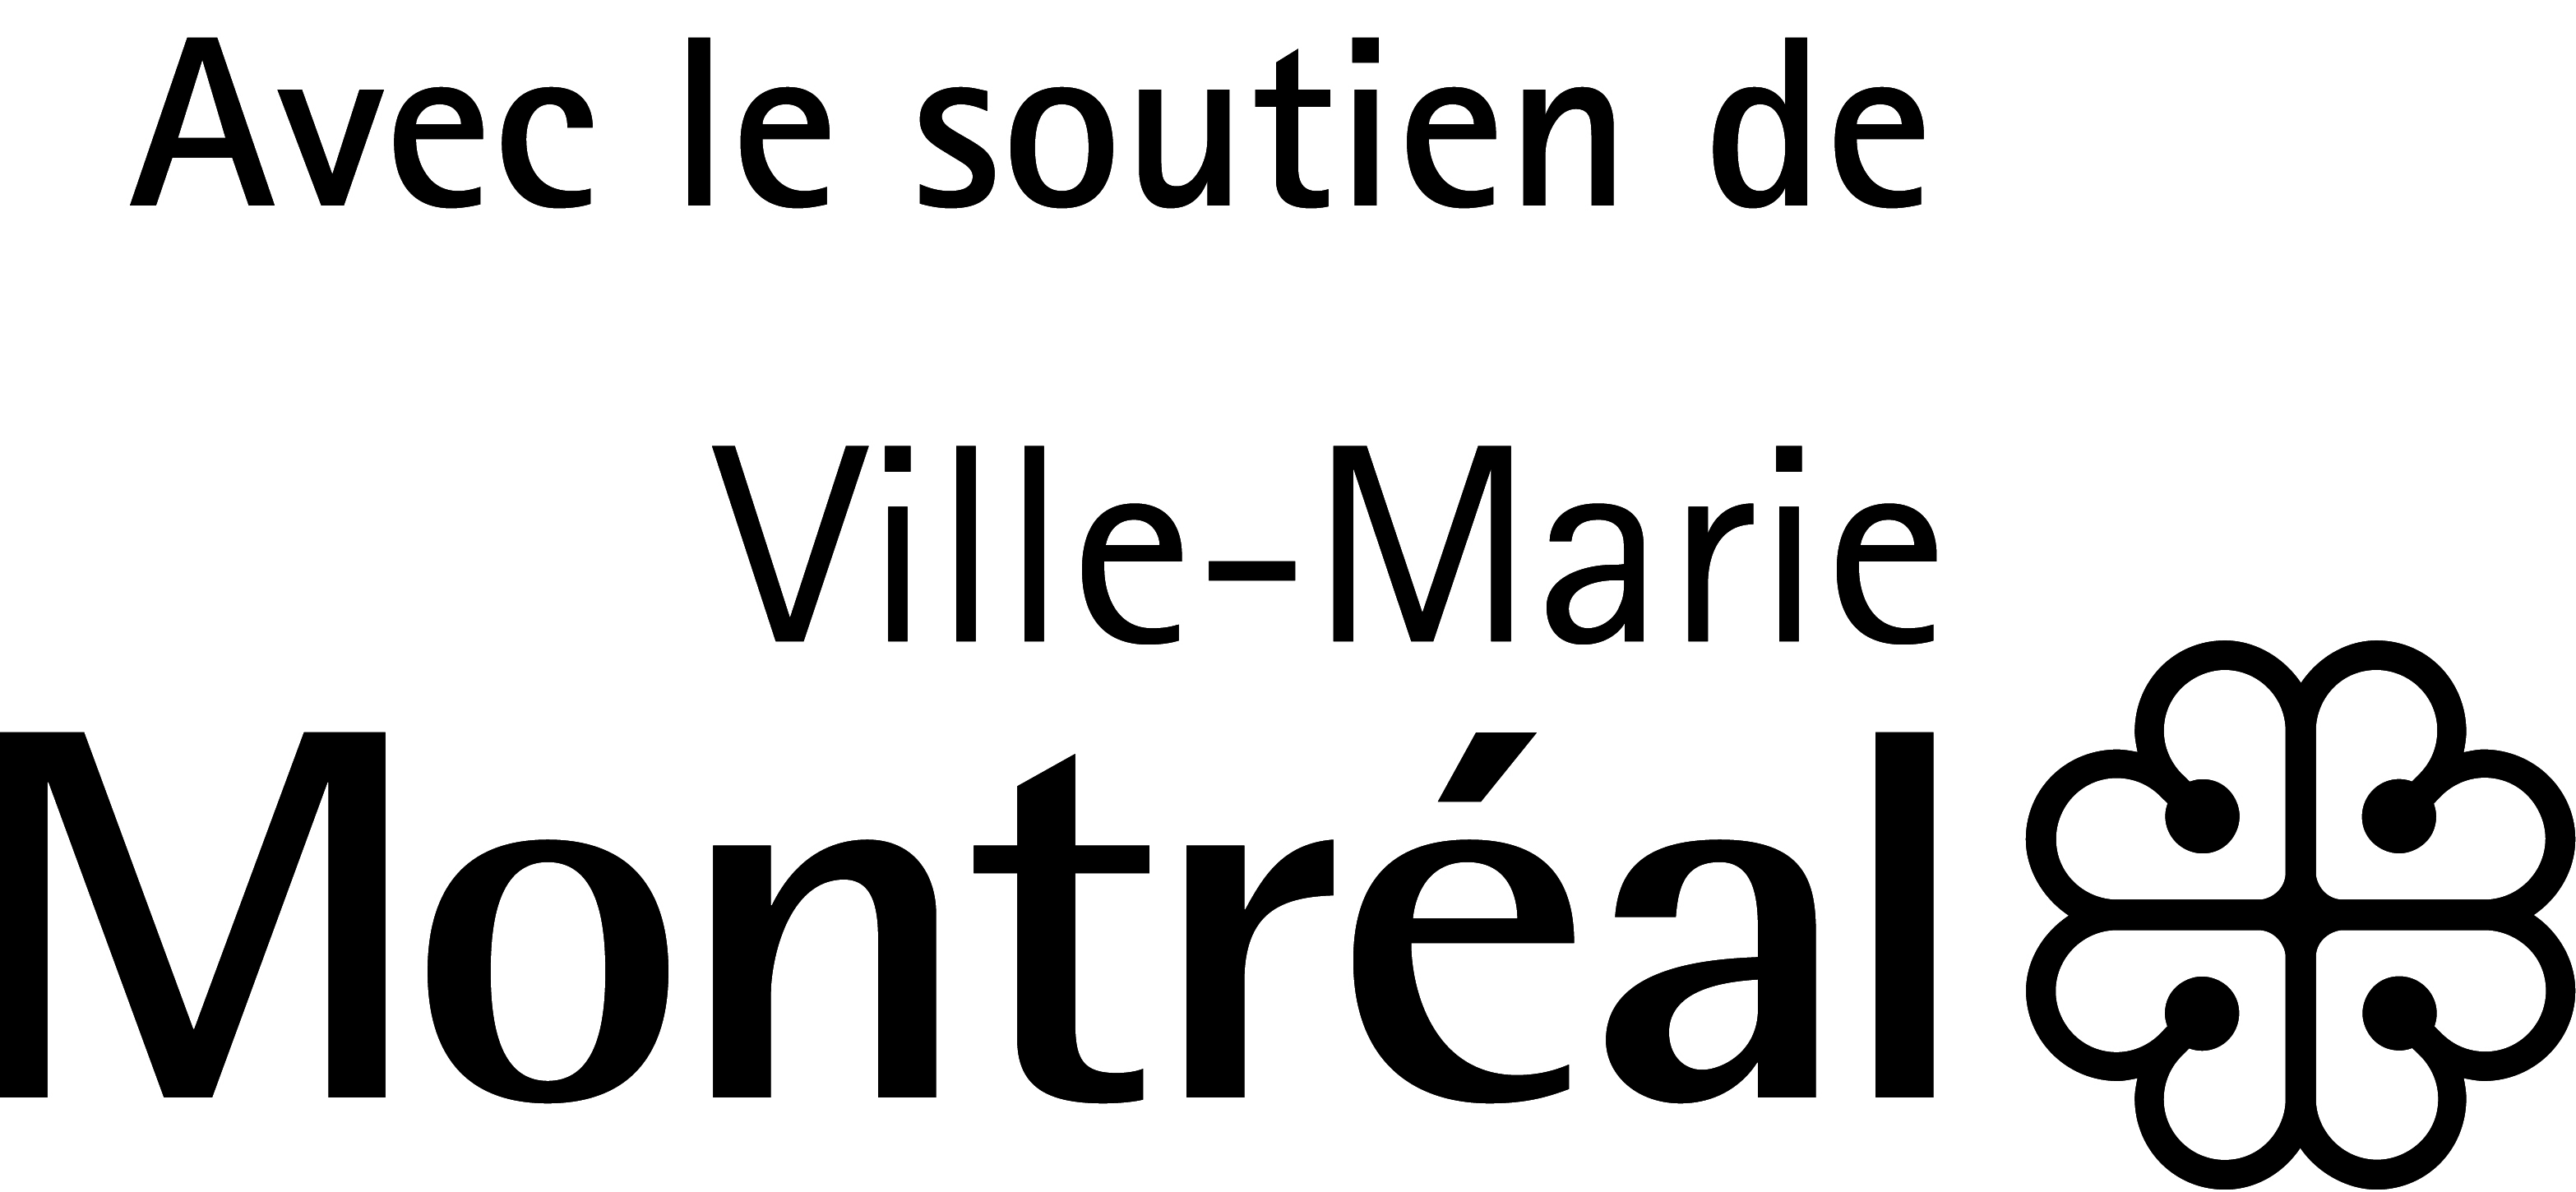 Logo Ville Marie Avec le soutien Noir 600 dpi